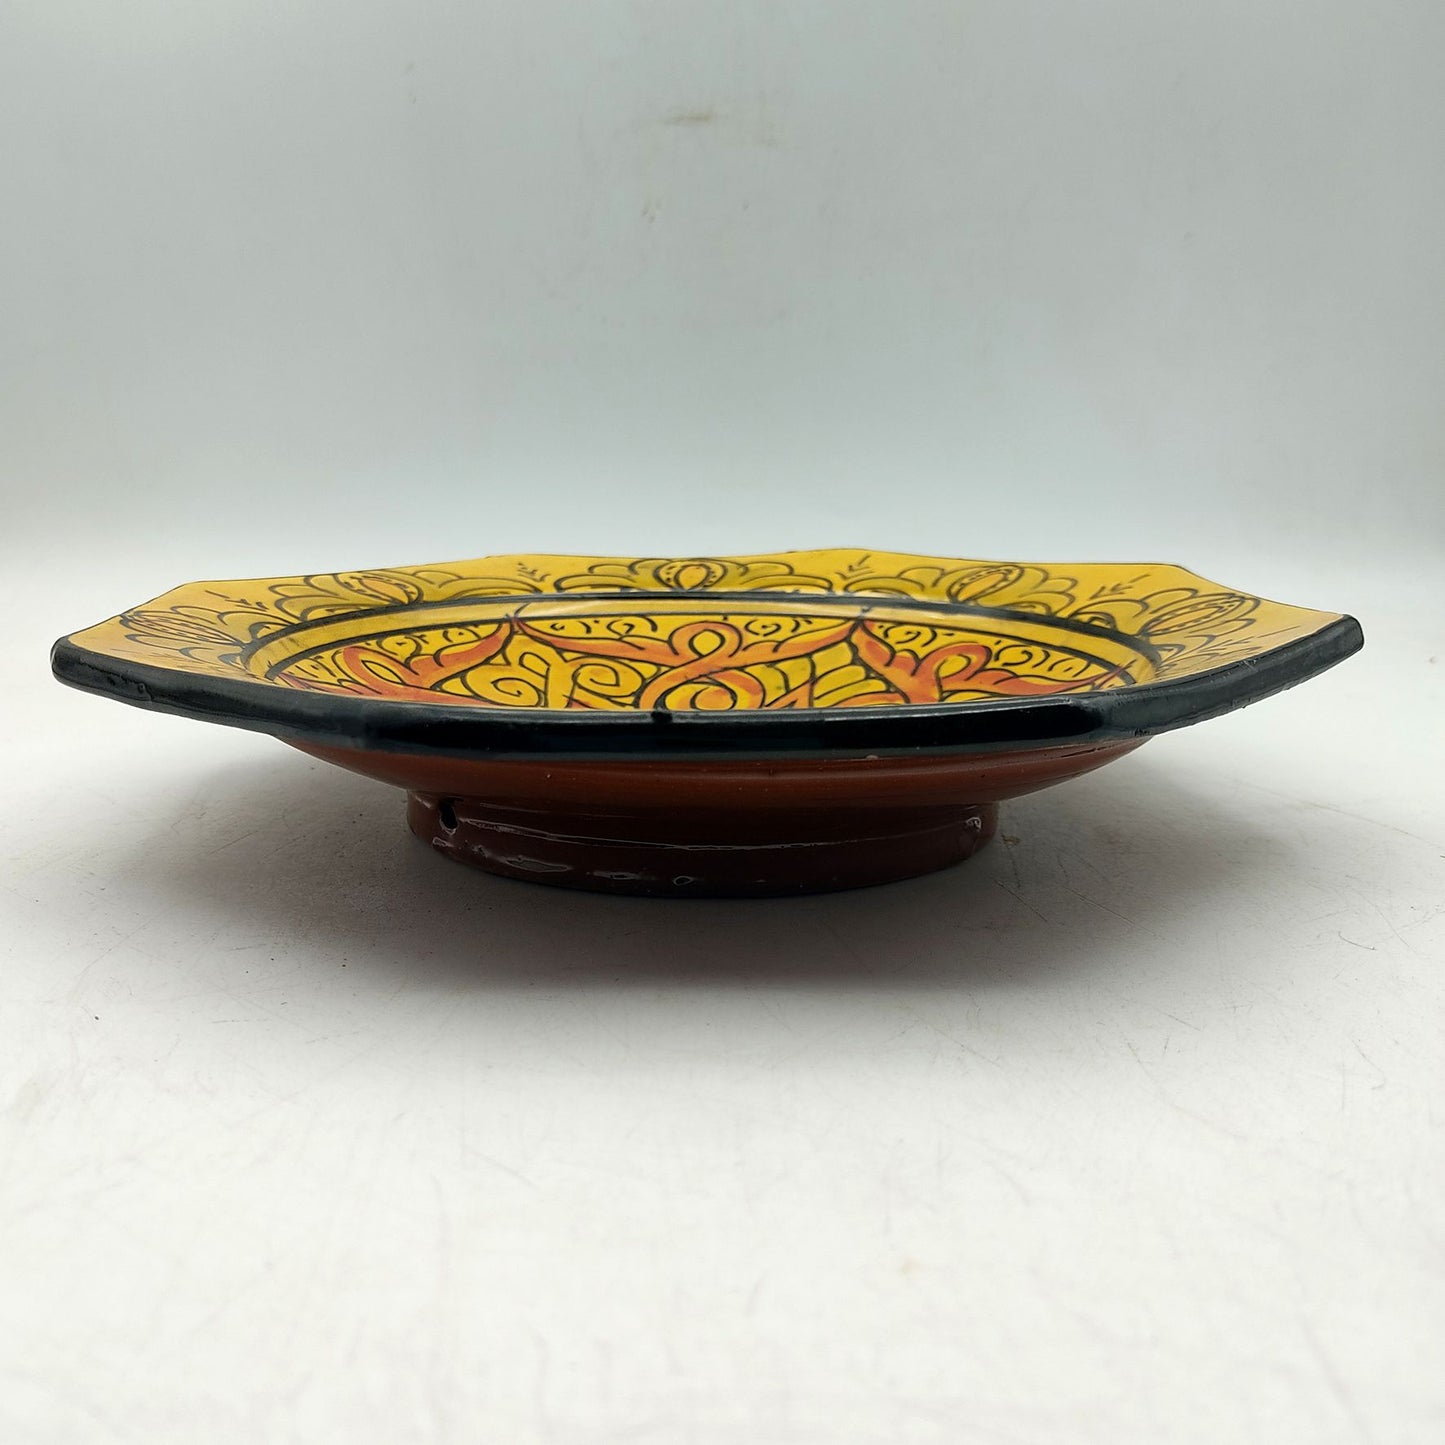 Piatto Ceramica Terracotta Parete Diam.23cm Etnico Marocchino Marocco 0401221303